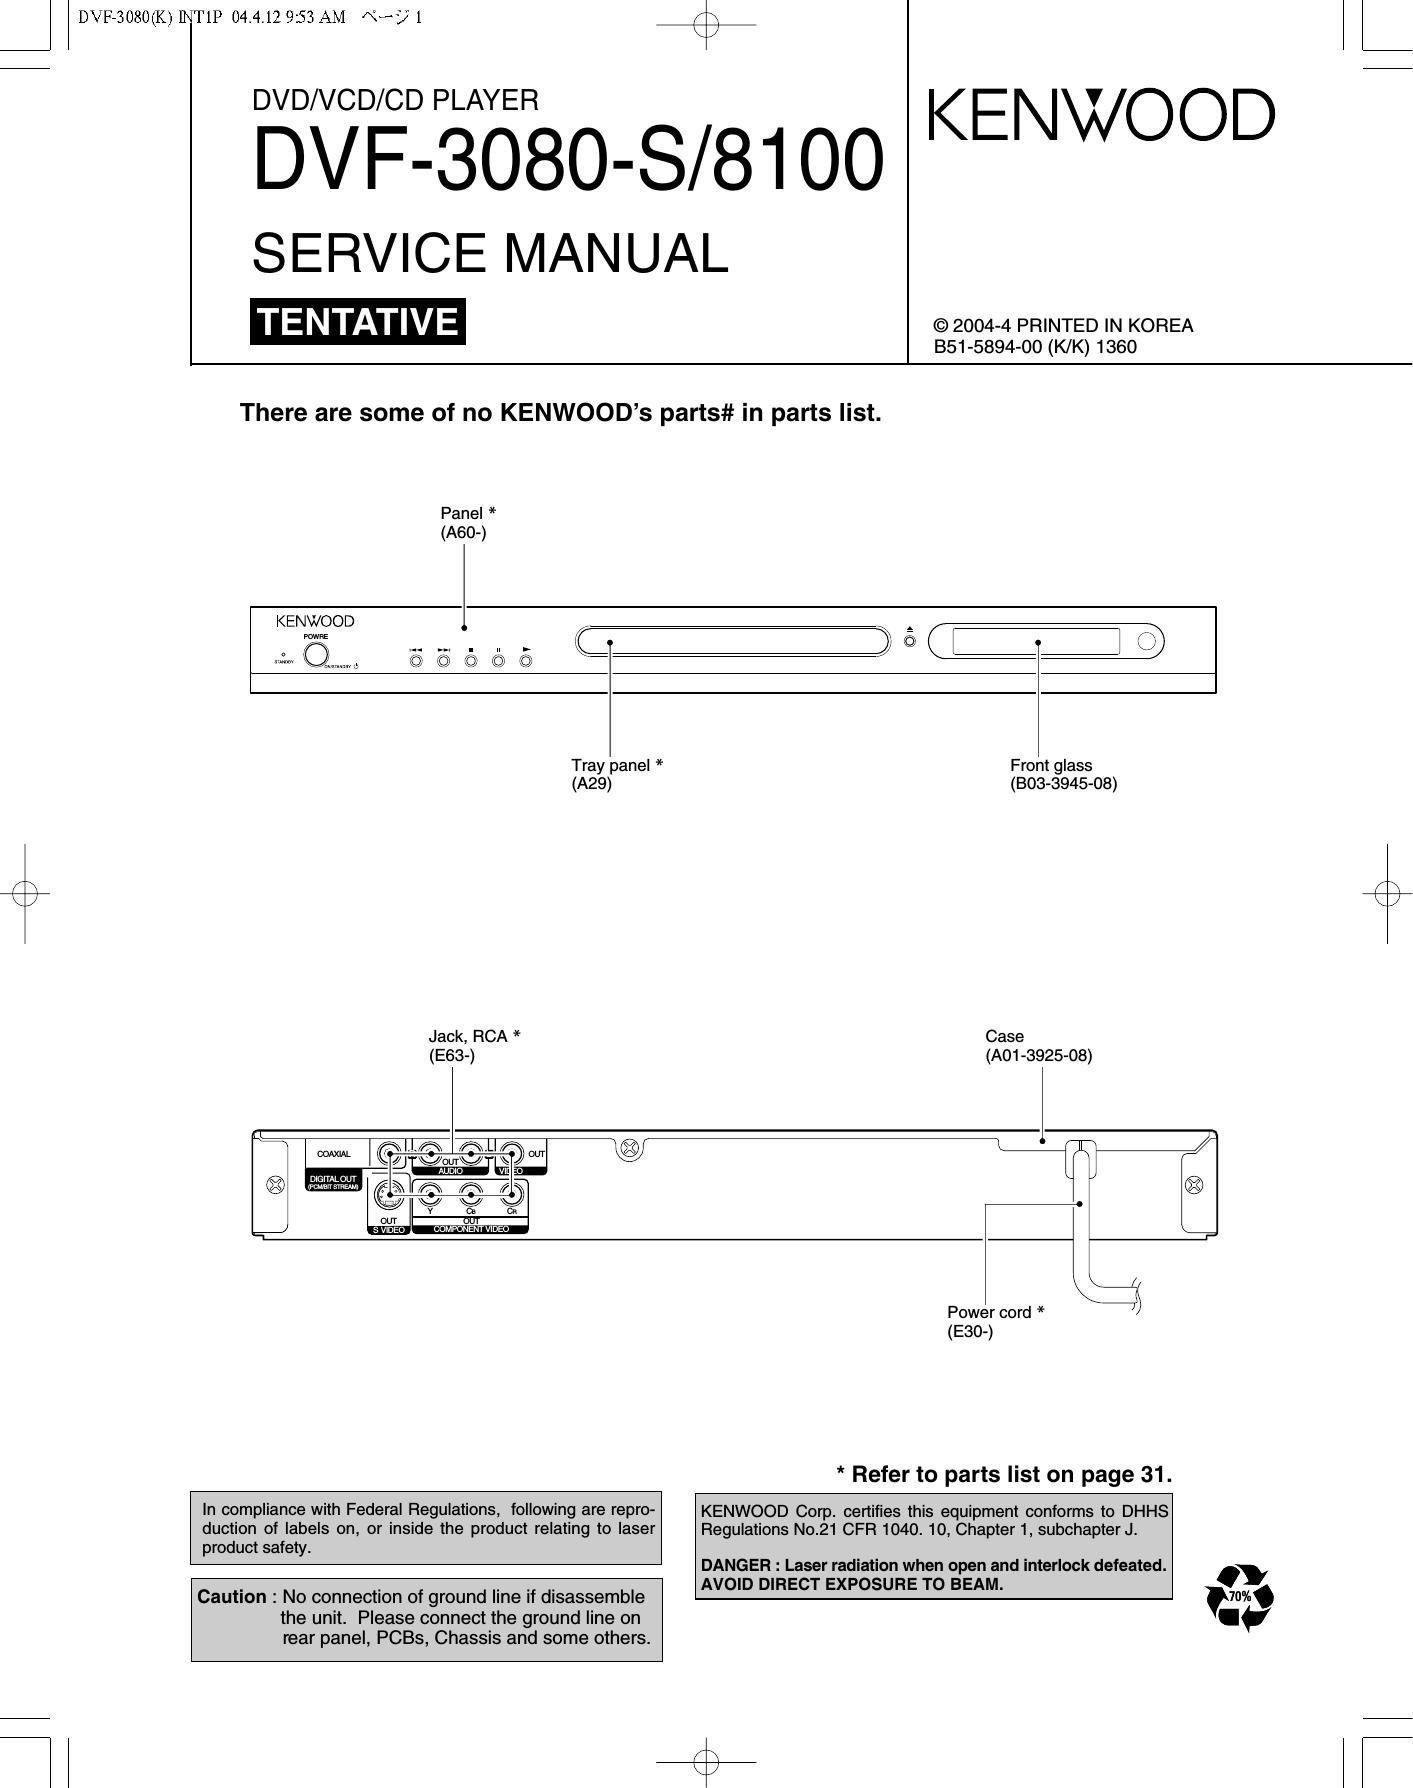 Kenwood DVF 3080 Service Manual